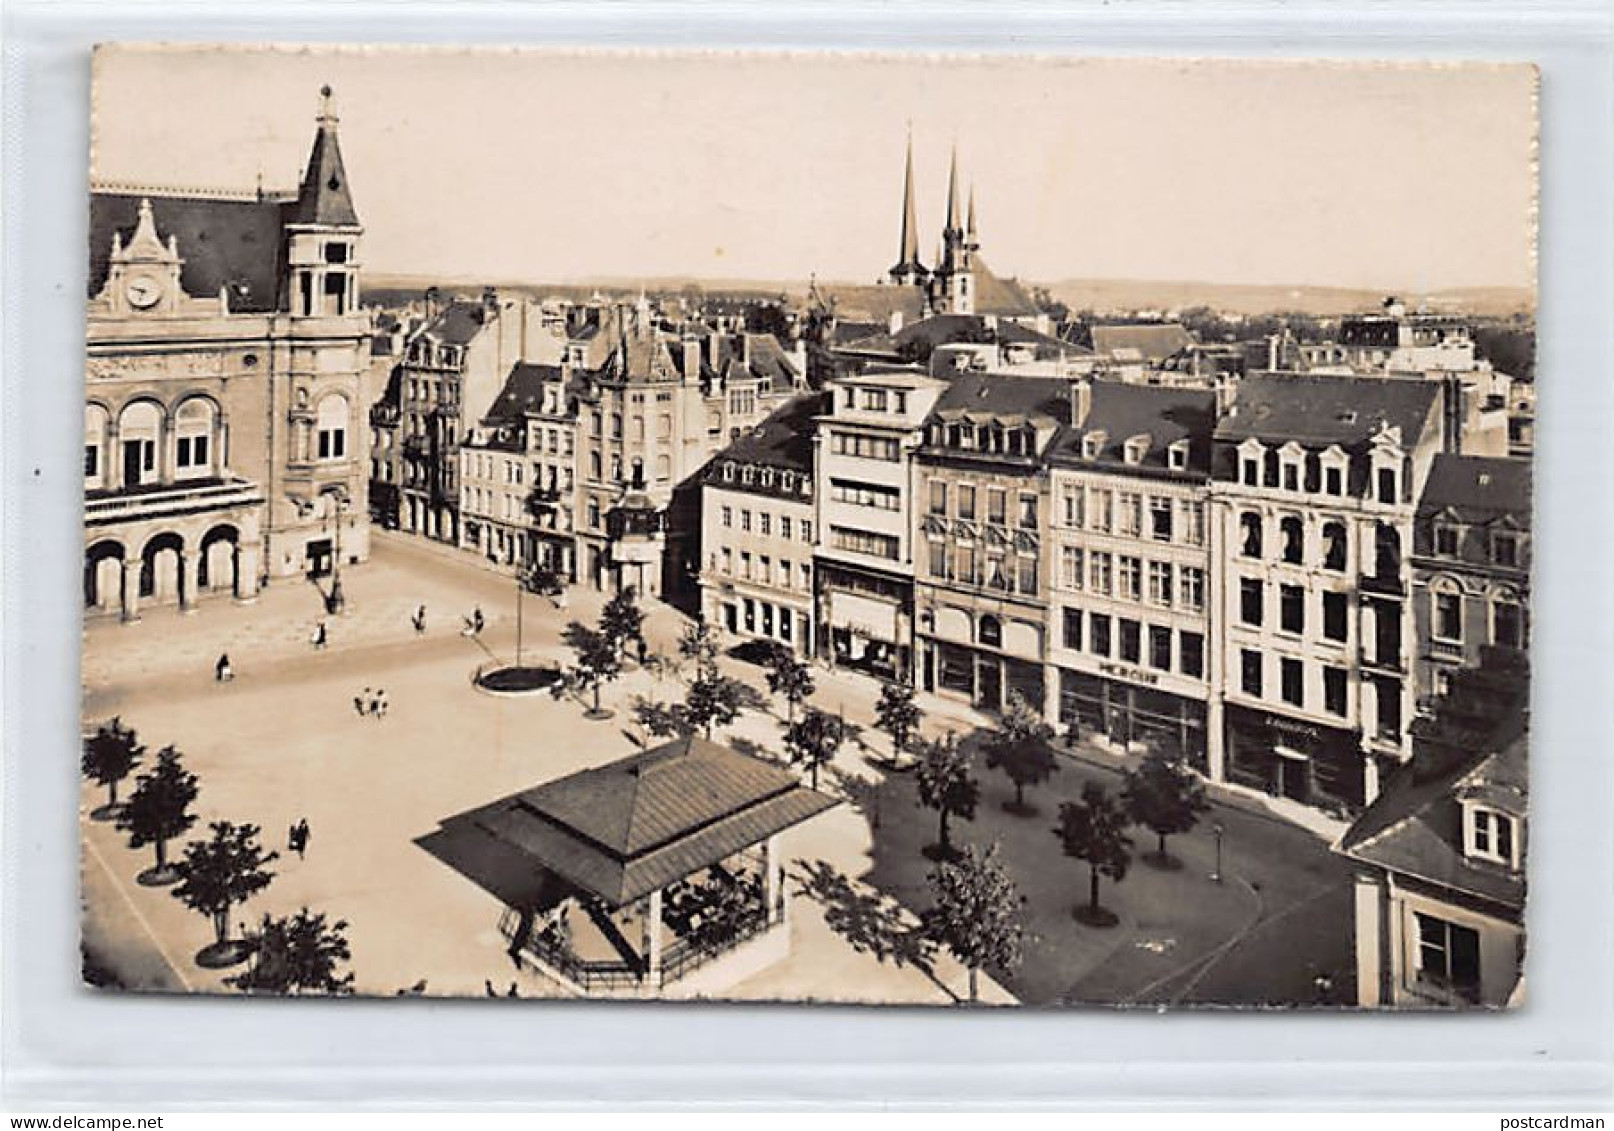 LUXEMBOURG-VILLE - Place D'Armes Et Vue Sur La Ville - Ed. Paul Kraus 16 - Luxembourg - Ville